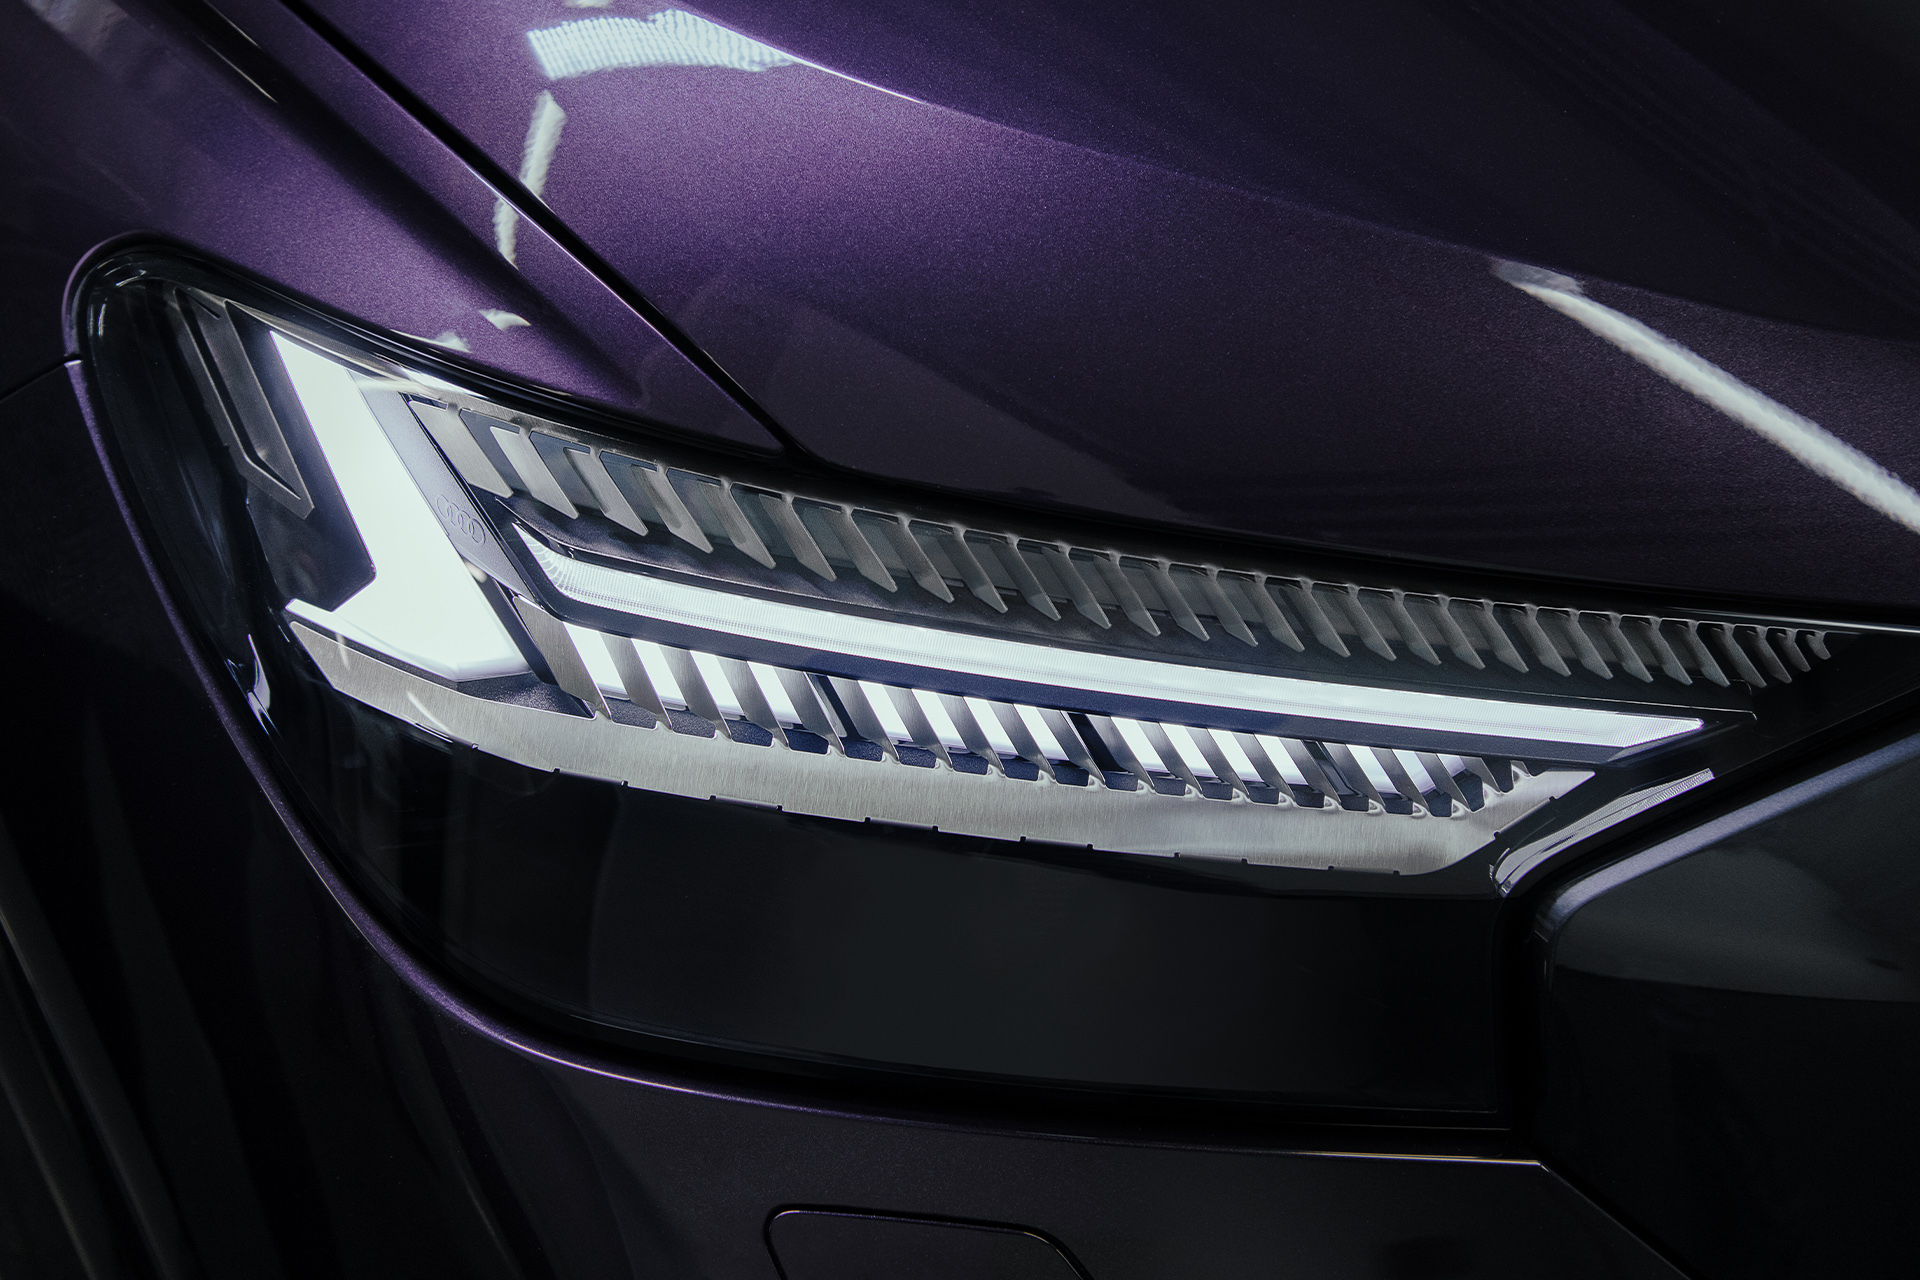 Detailbild des Audi Q4 e-tron Frontscheinwerfers.